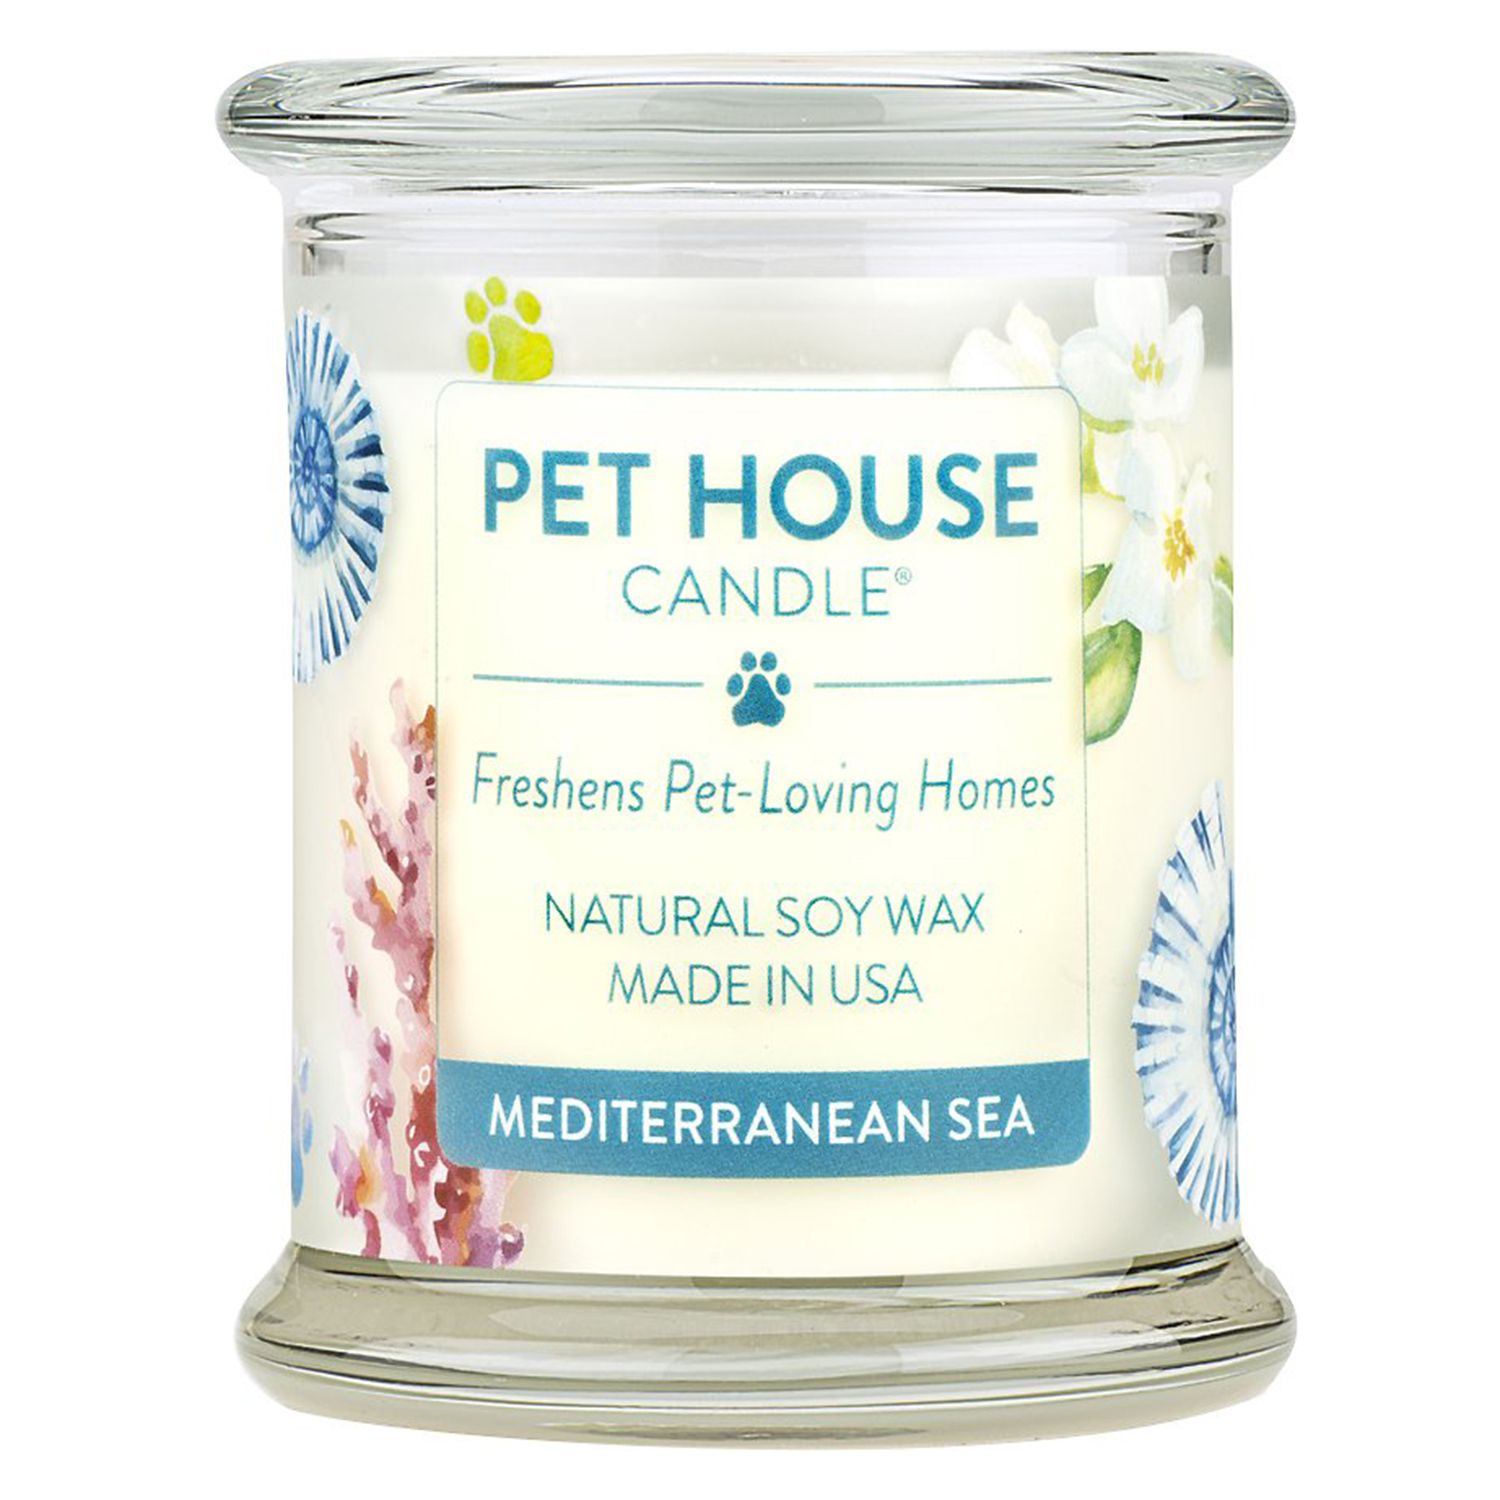 Prírodná sójová sviečka pre domáce zvieratá v Stredozemnom mori